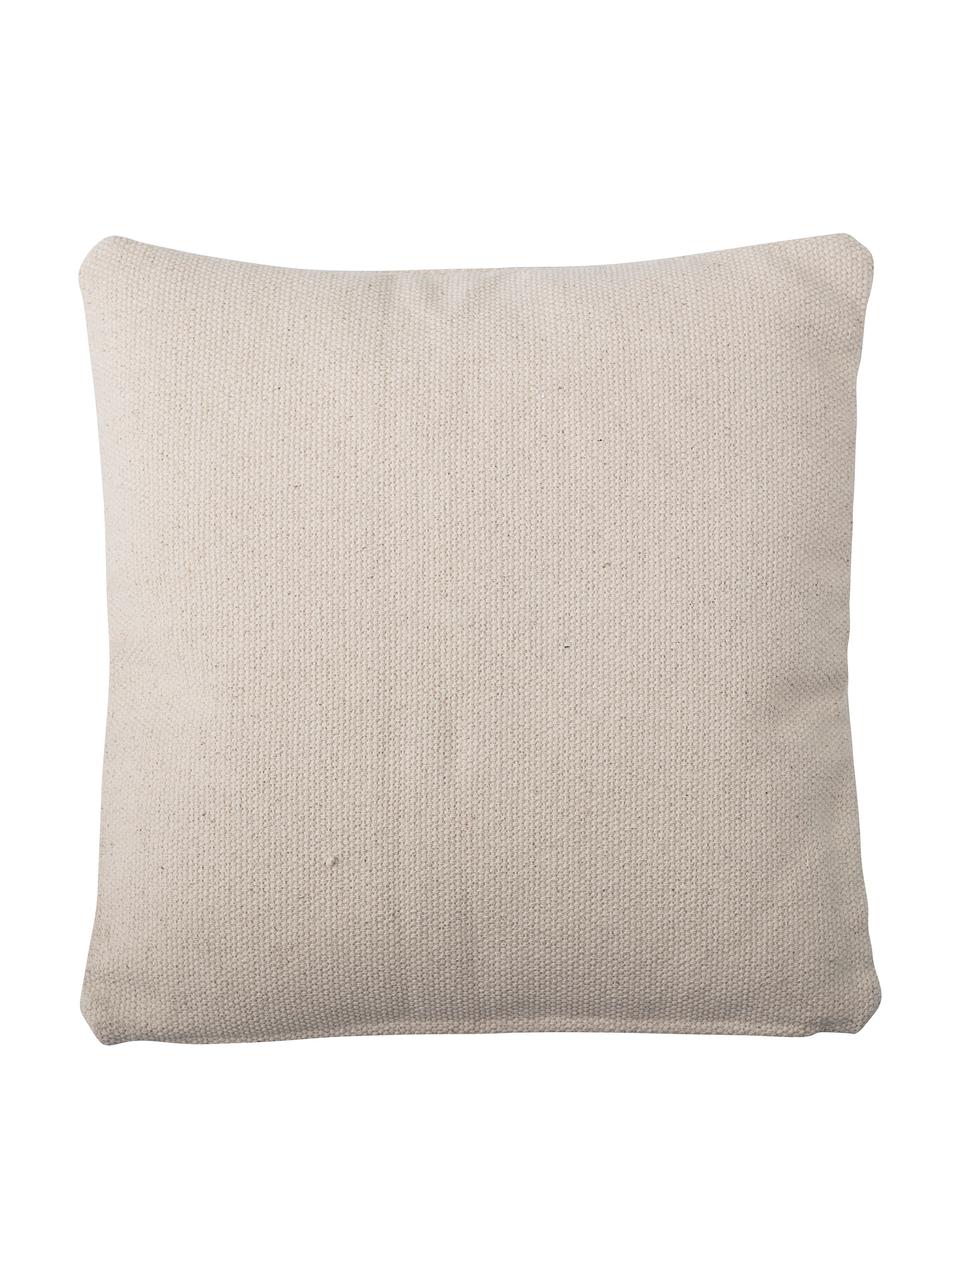 Kissen Nata, mit Inlett, Bezug: 100% Baumwolle, Beige, Senfgelb, B 45 x L 45 cm